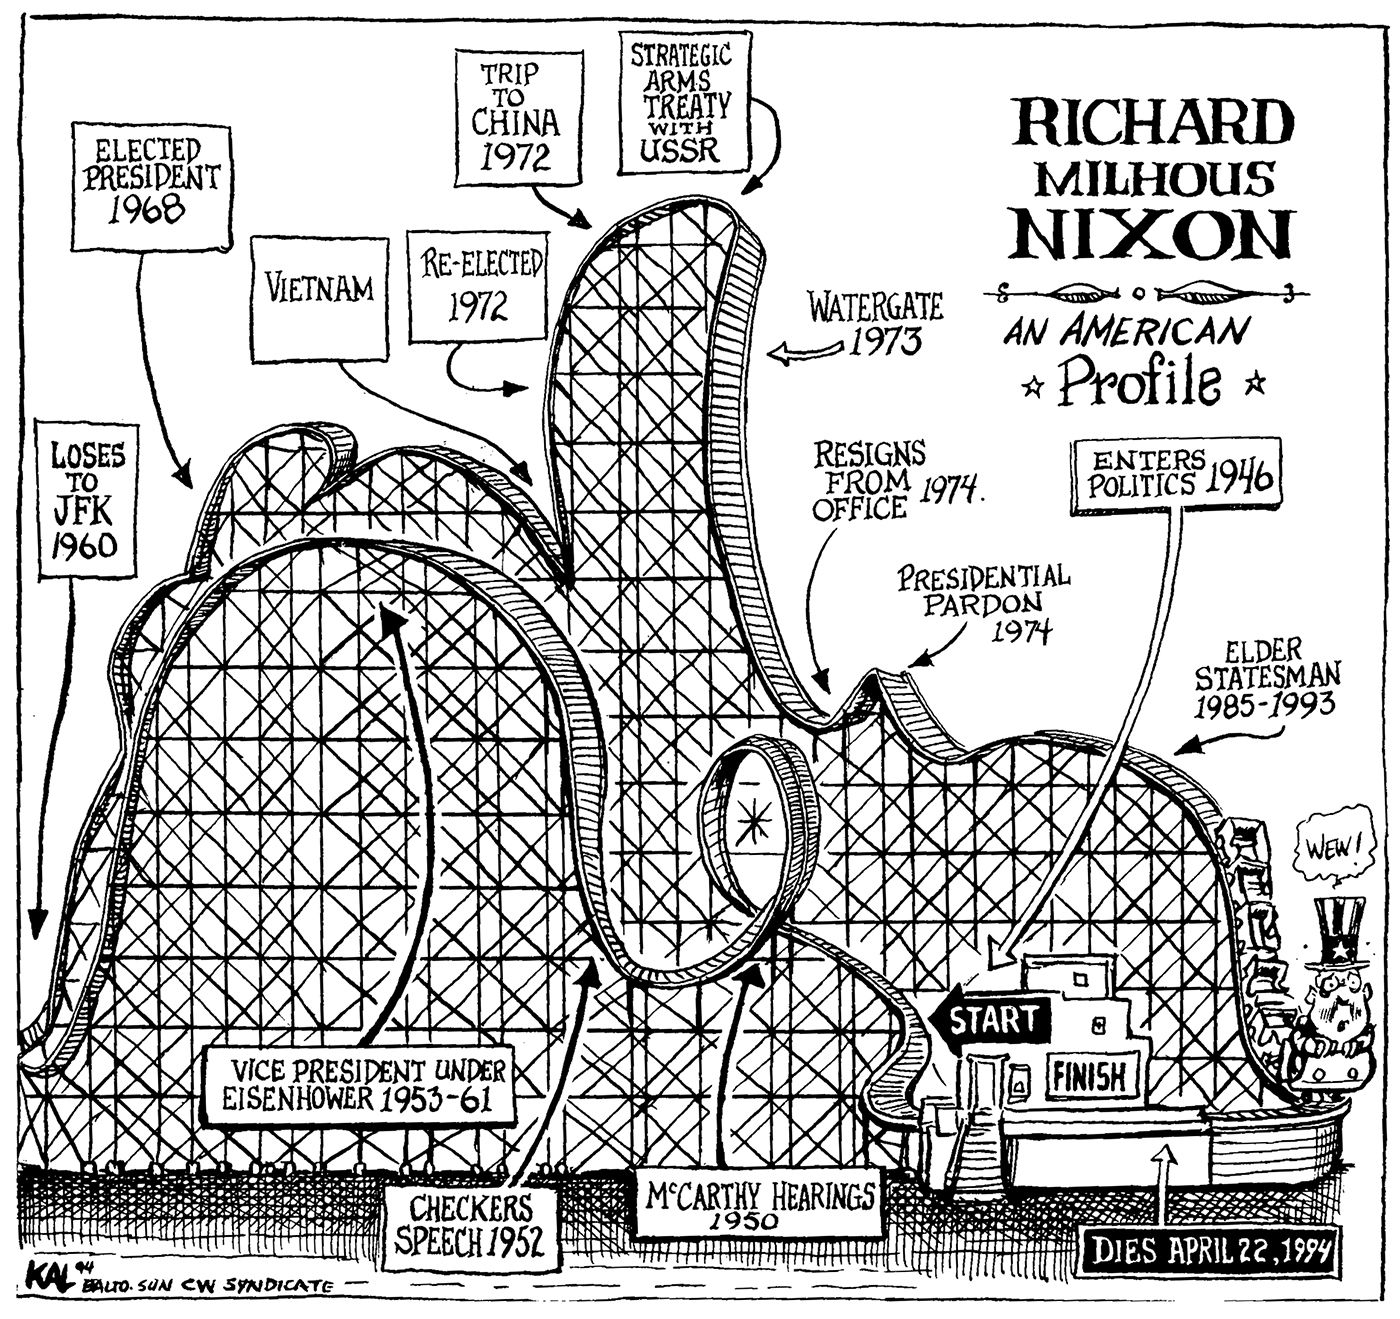 Richard Milhous Nixon: An American Profile